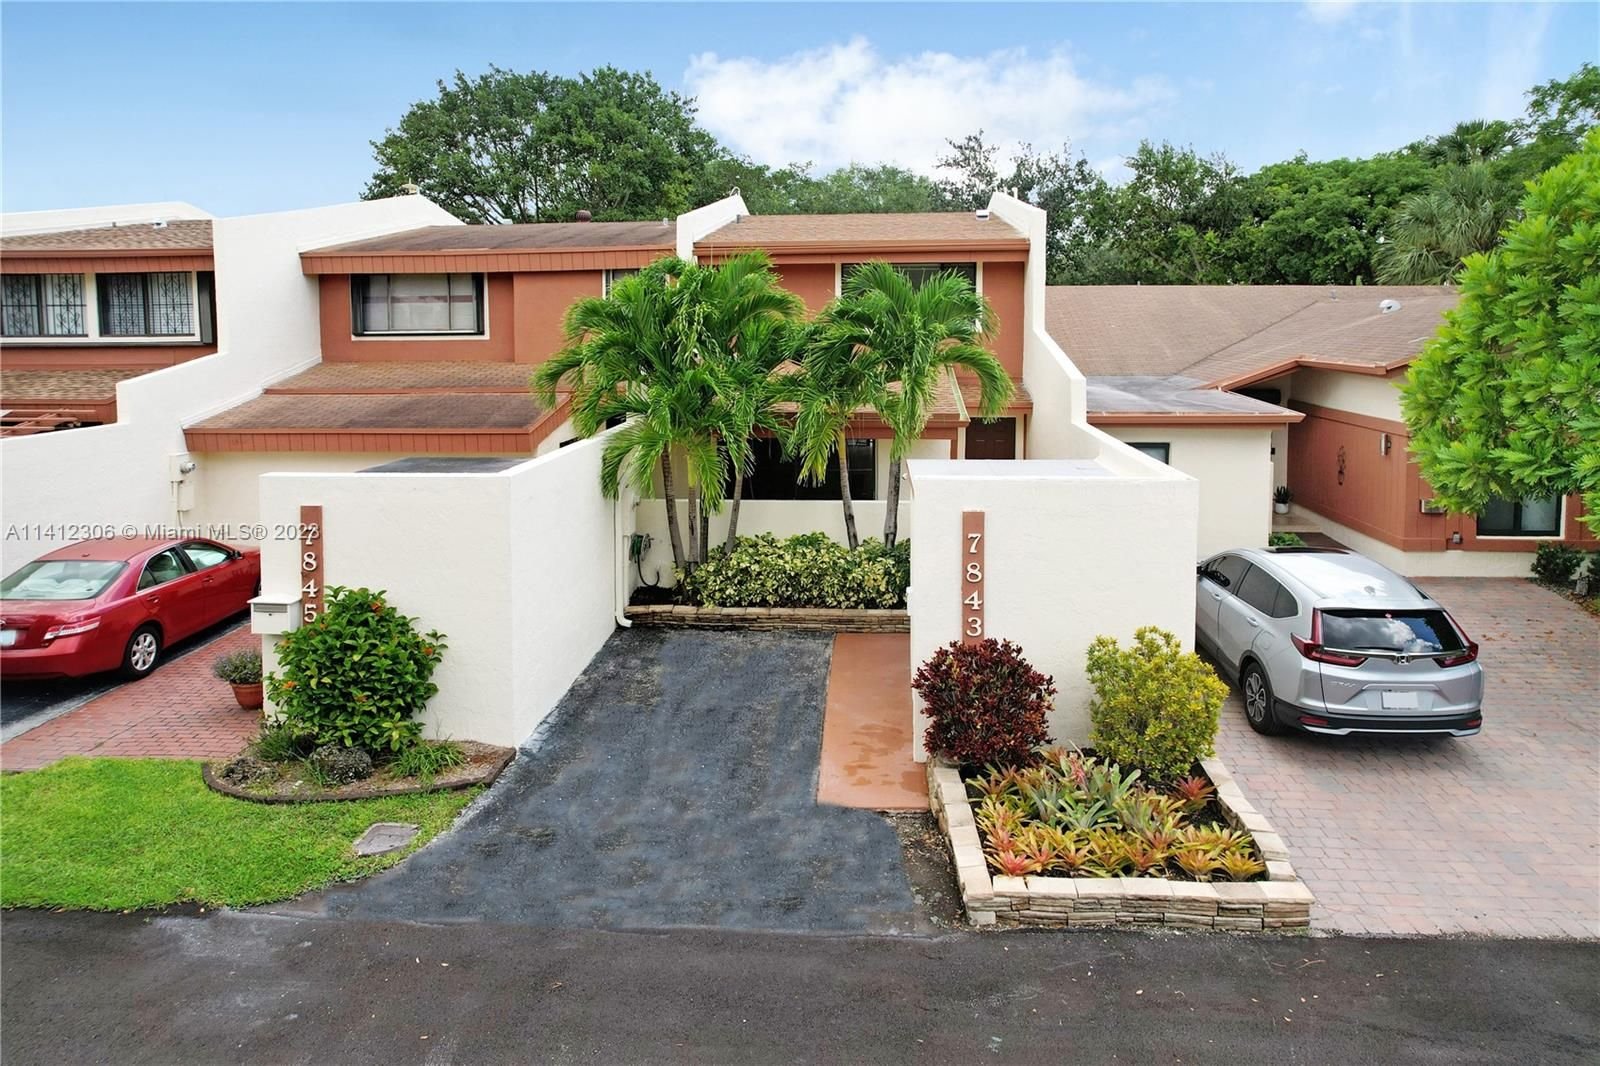 Real estate property located at 7843 106th Cir, Miami-Dade County, Miami, FL